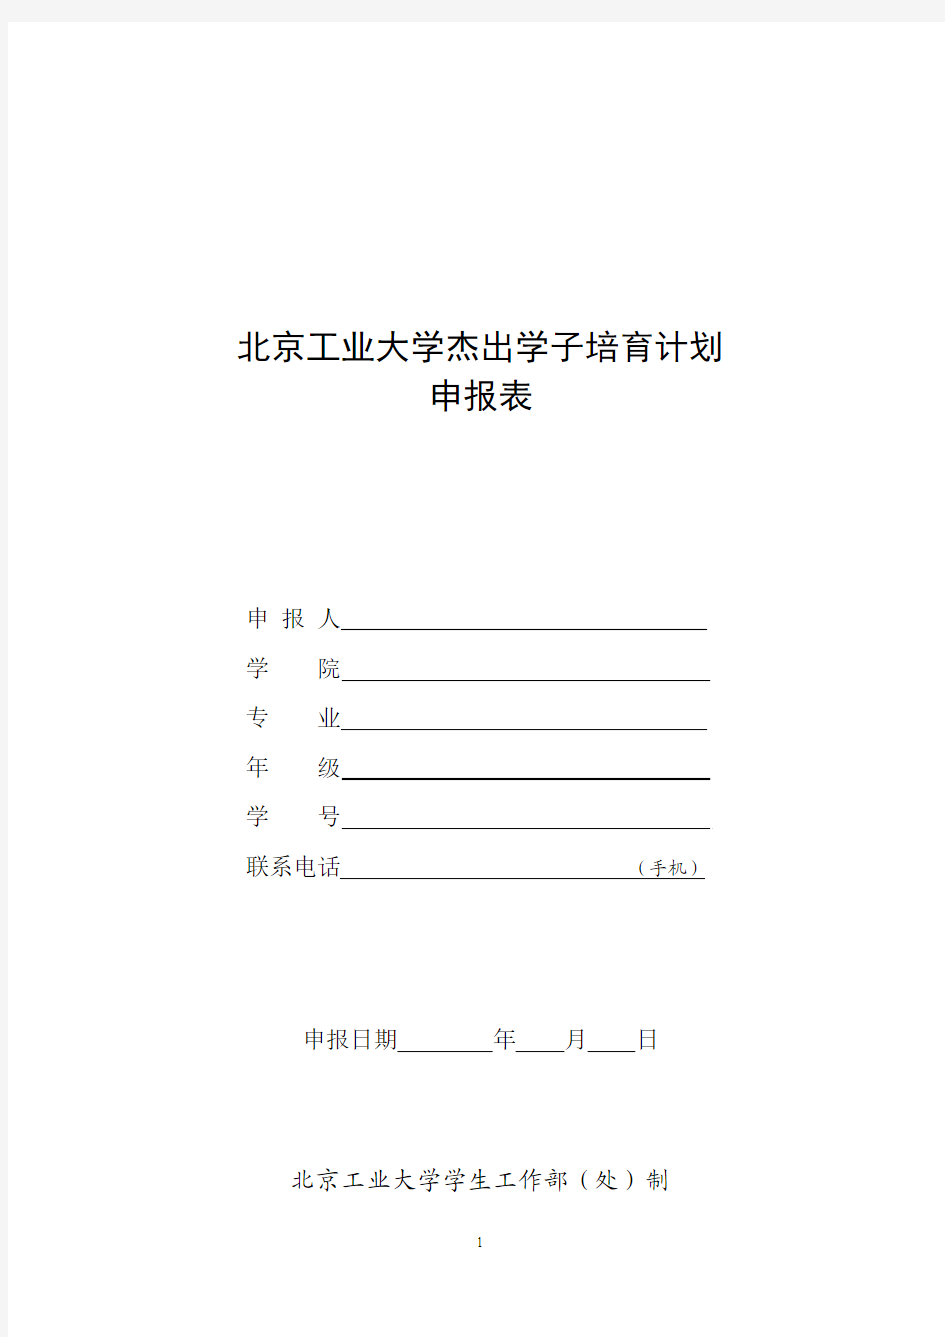 2015版本北京大学杰出学子培育计划申报表(填写打印)